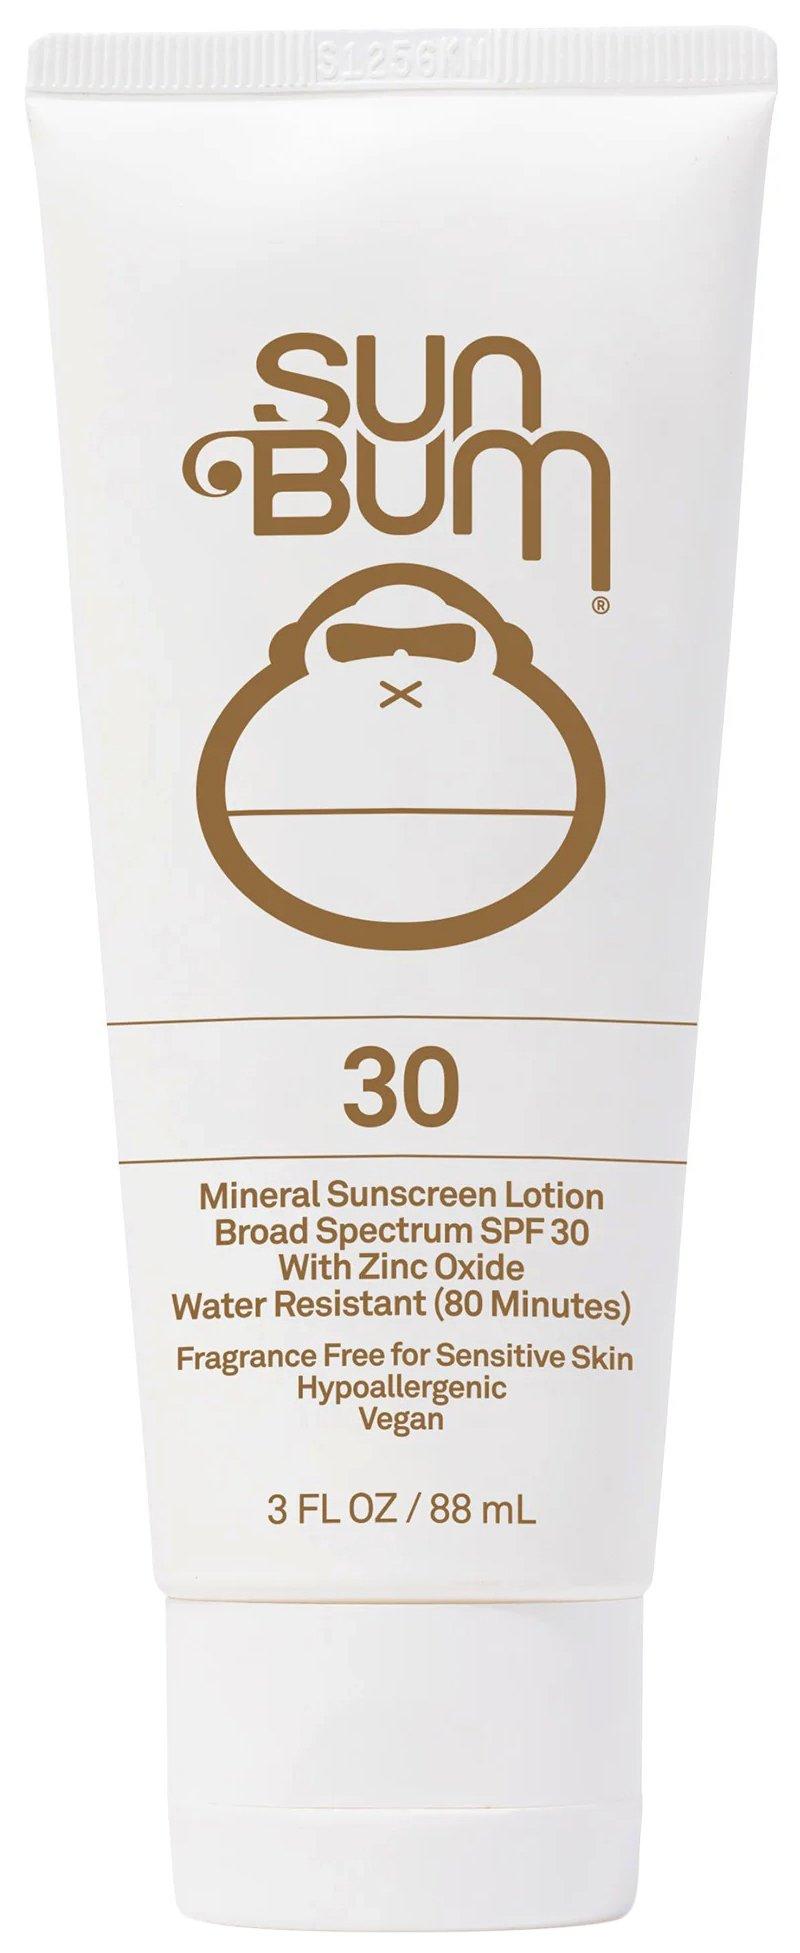 Sun Bum SPF 30 Zinc Oxide Mineral Sunscreen